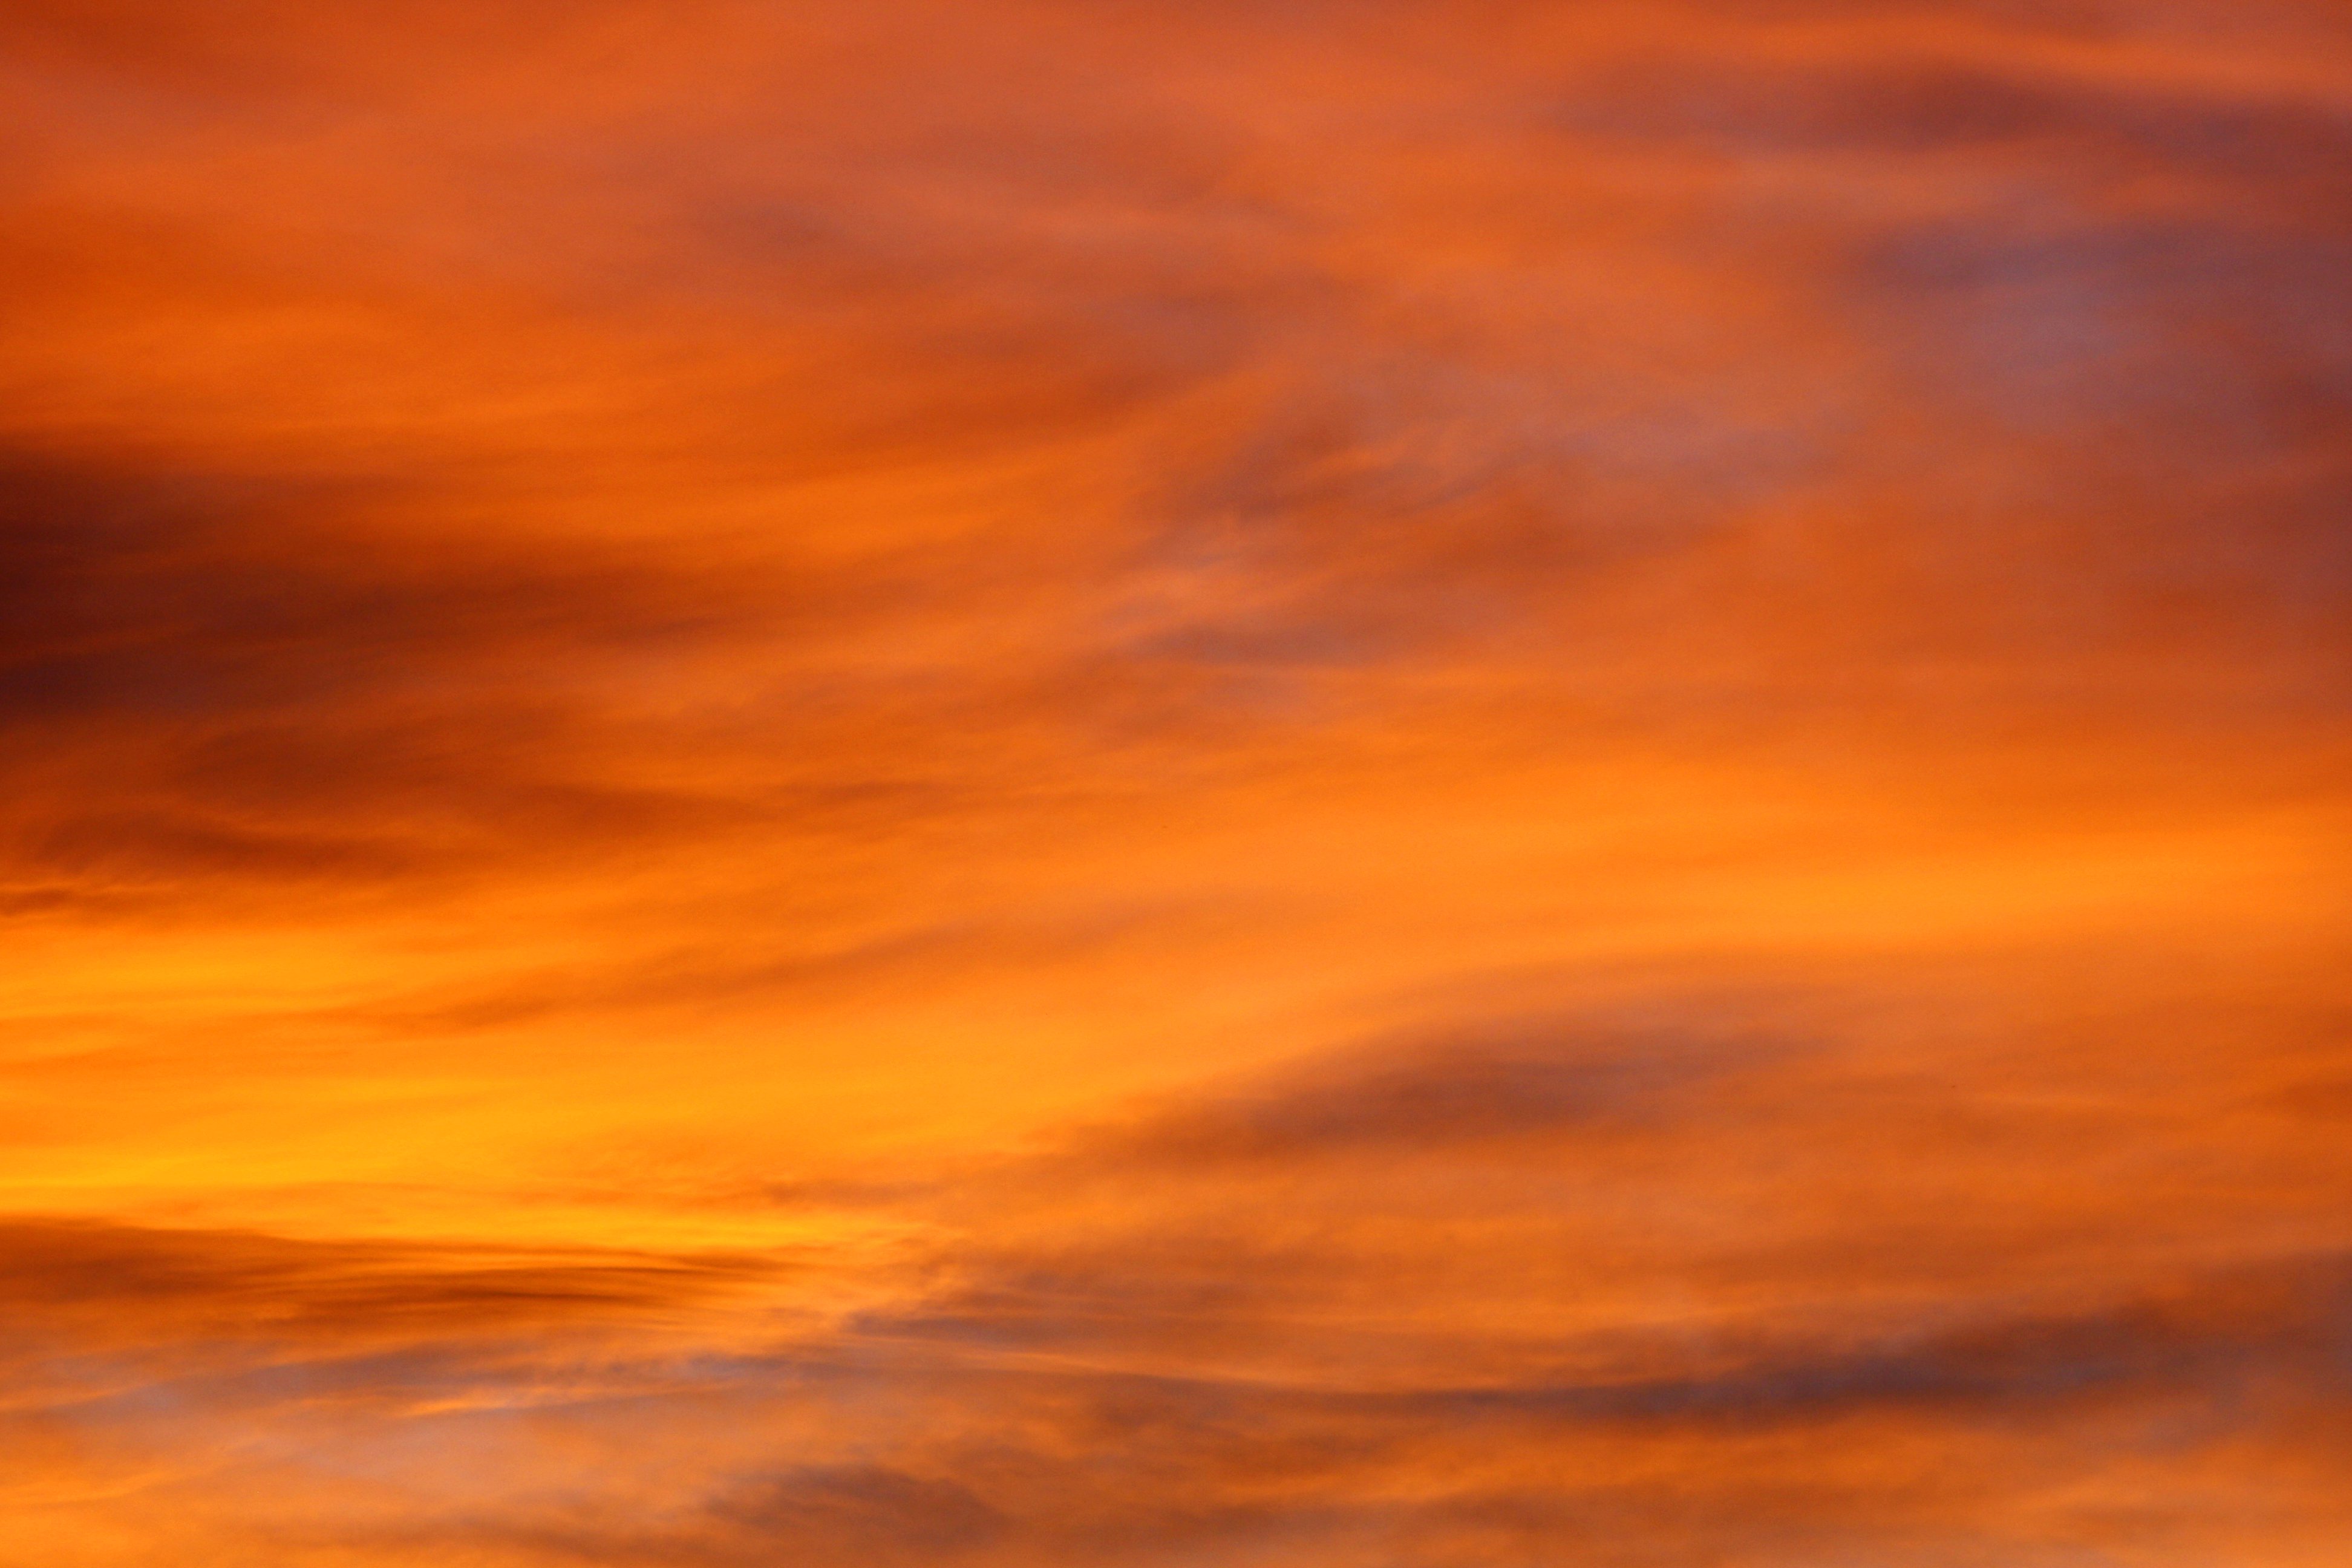 Brilliant Orange Sunset Clouds Picture. Free Photograph. Photo Public Domain